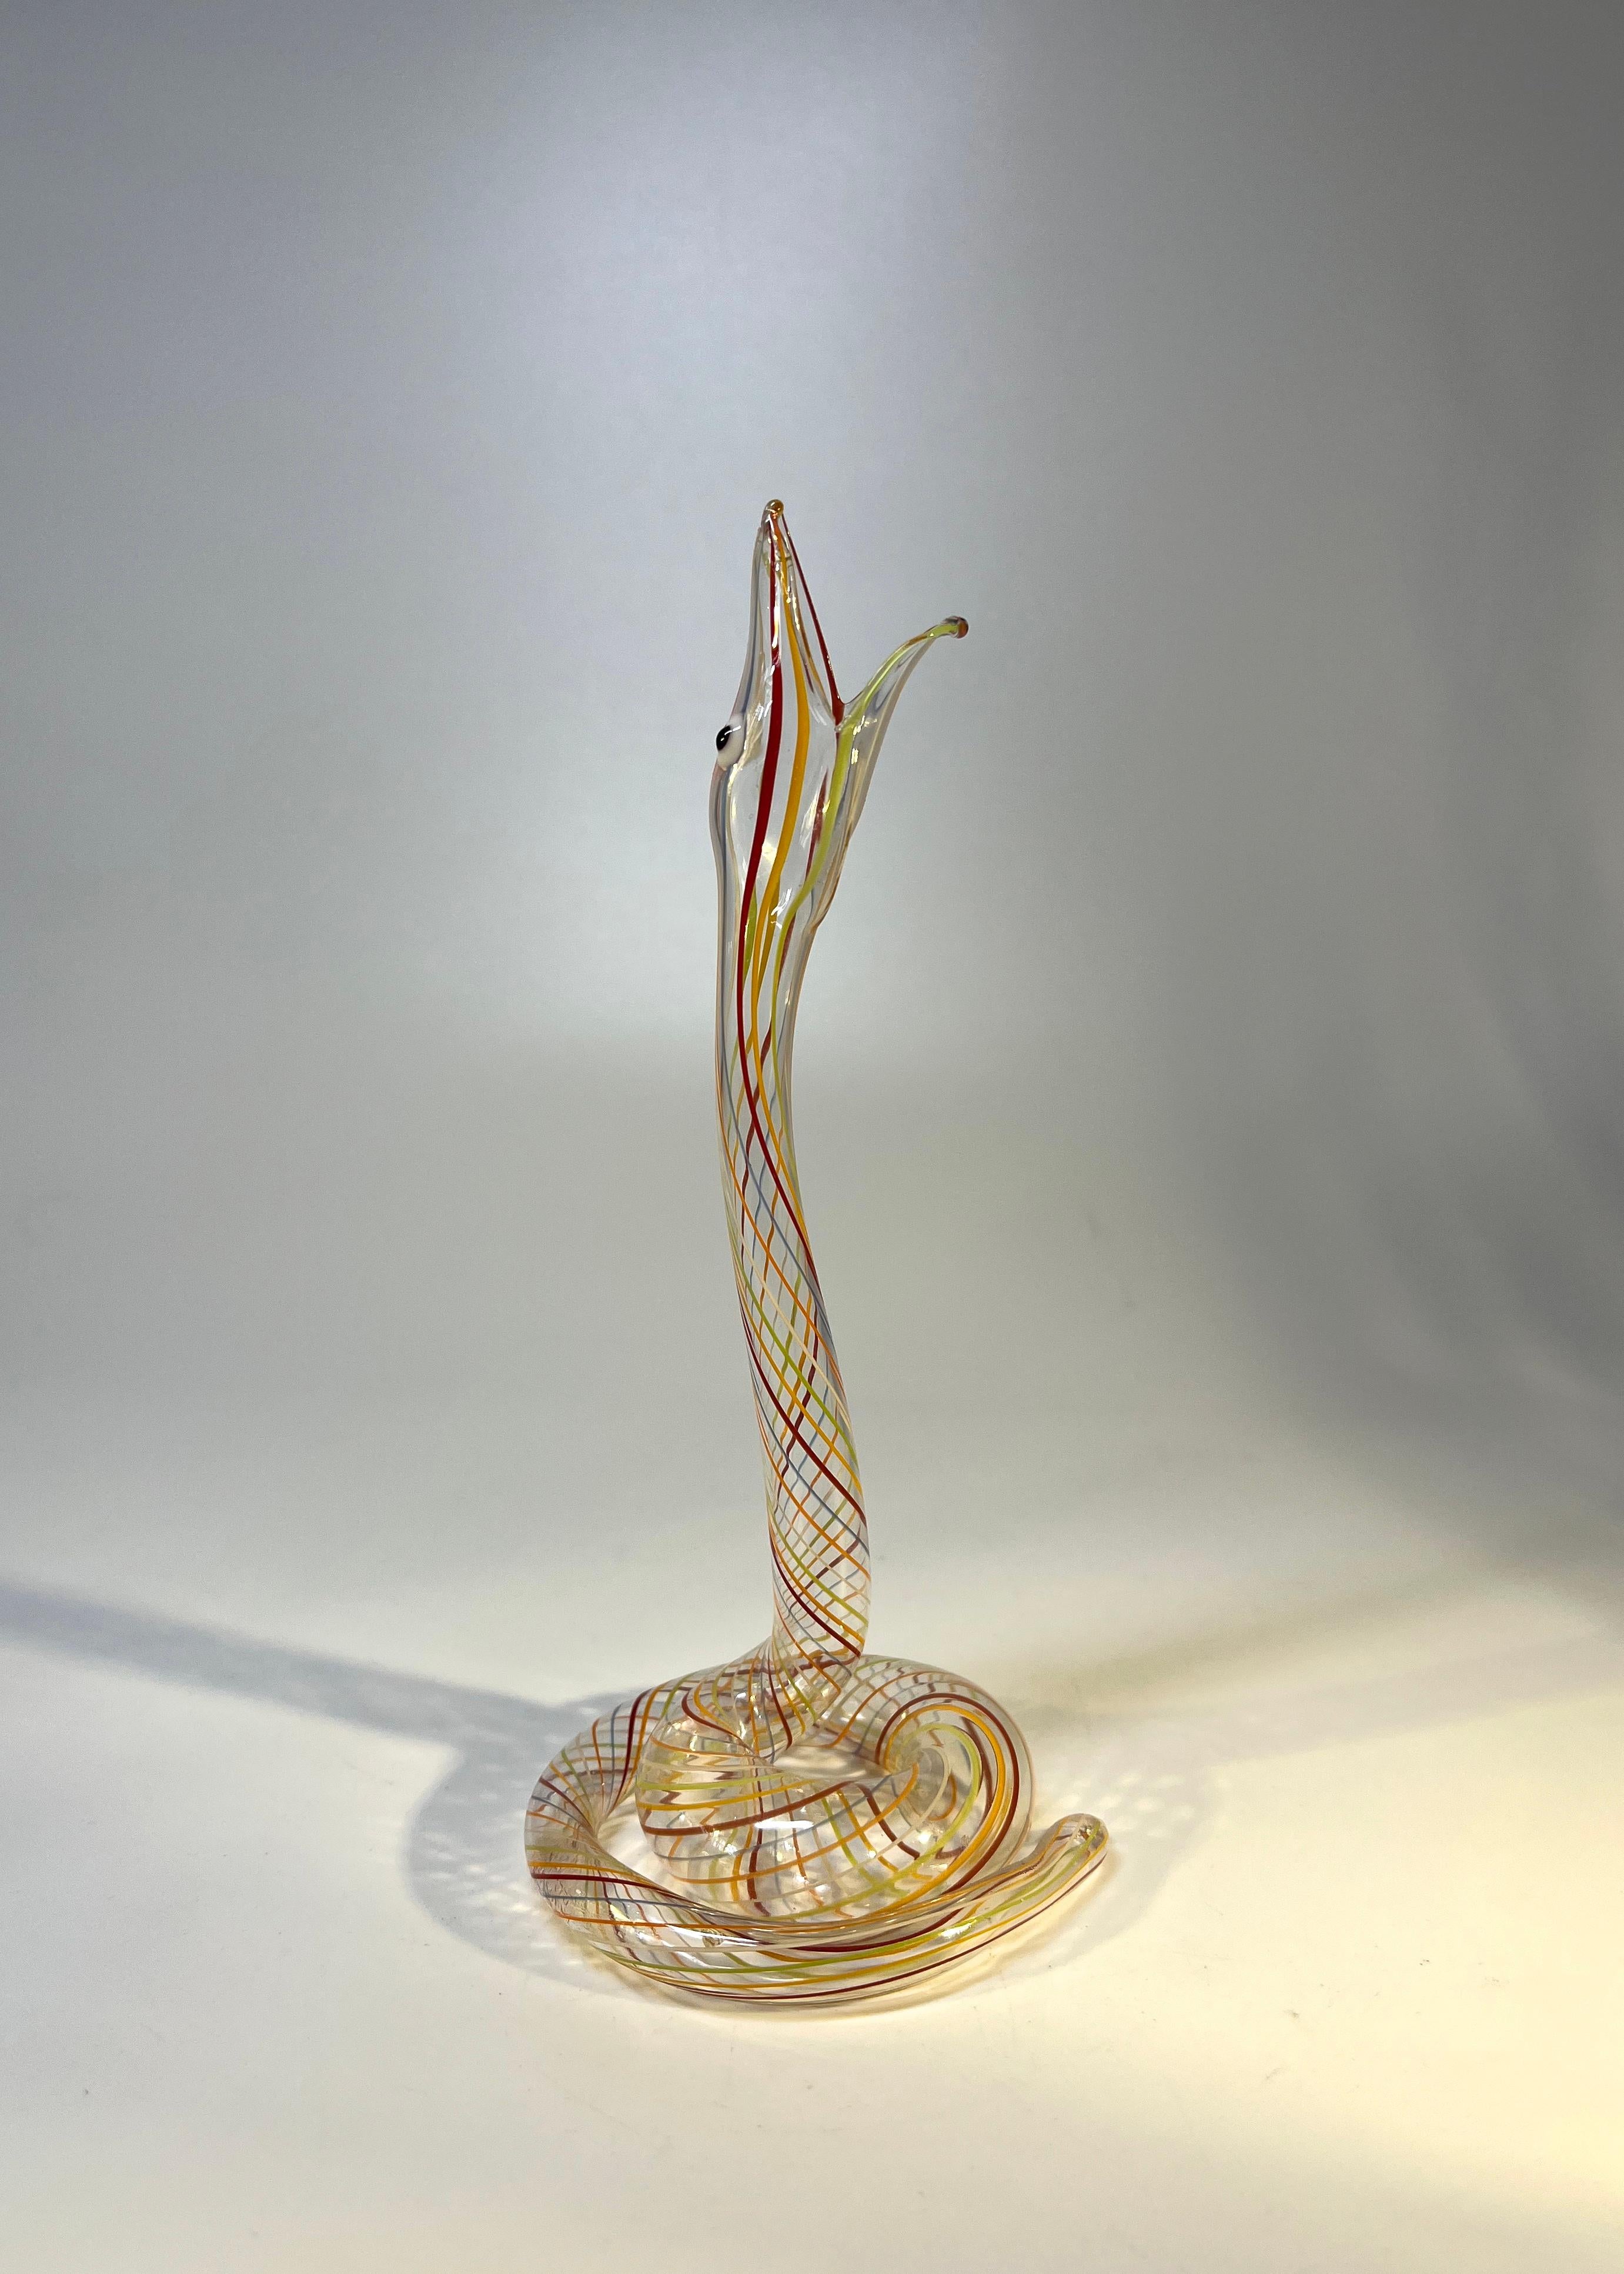 Slither of Whimsical Bimini Glass Lampwork Art Deco Snake Vases, c1920-1930 For Sale 2